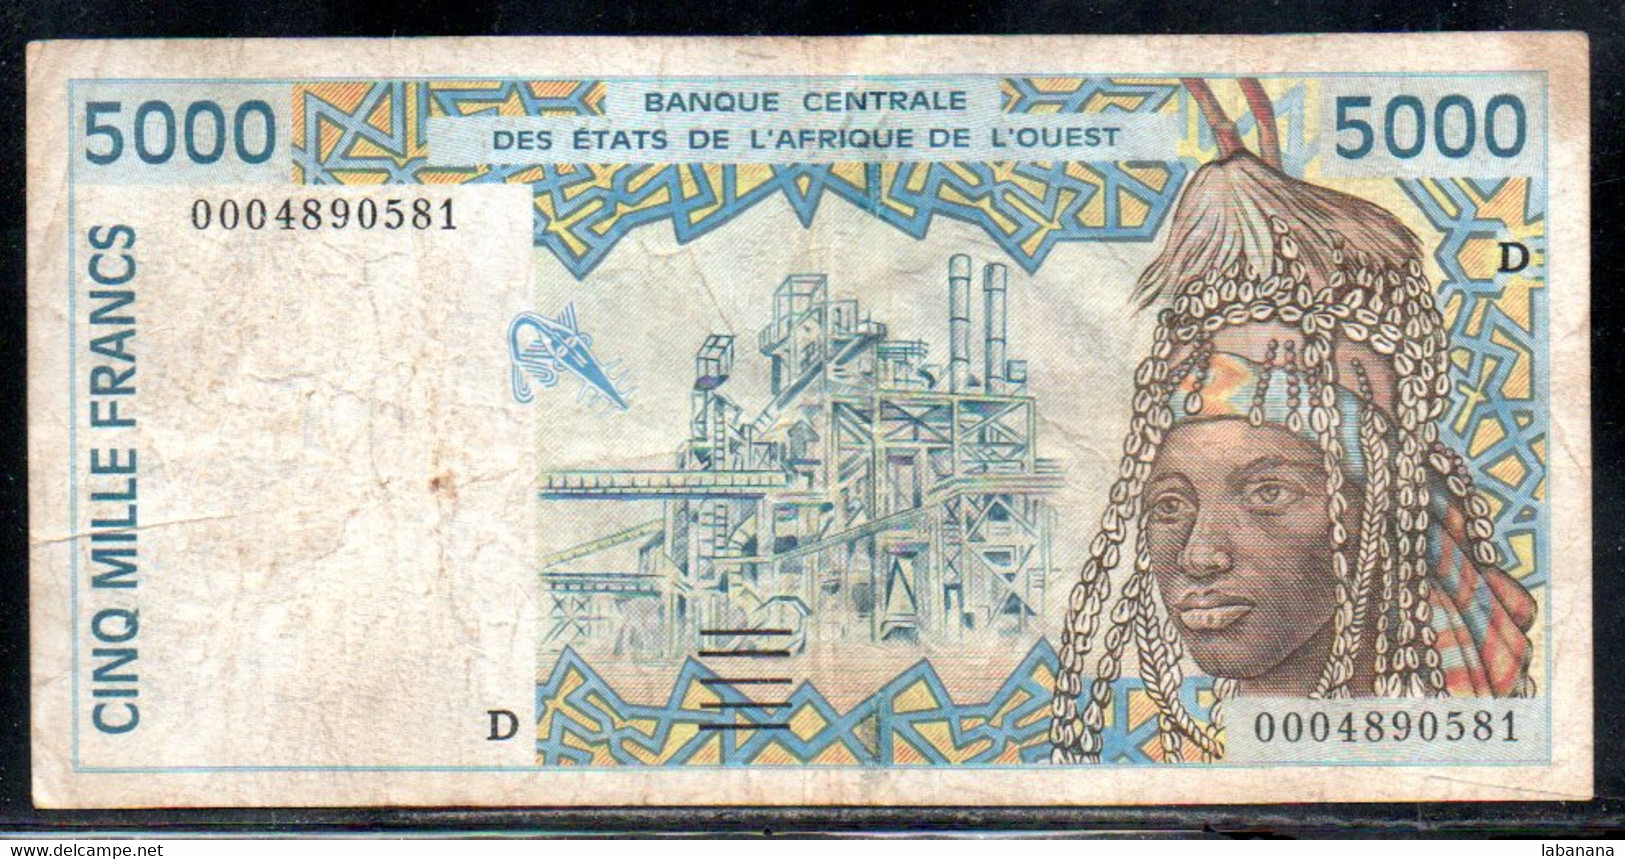 659-Mali 5000fr 2000 D000 RARE - Mali